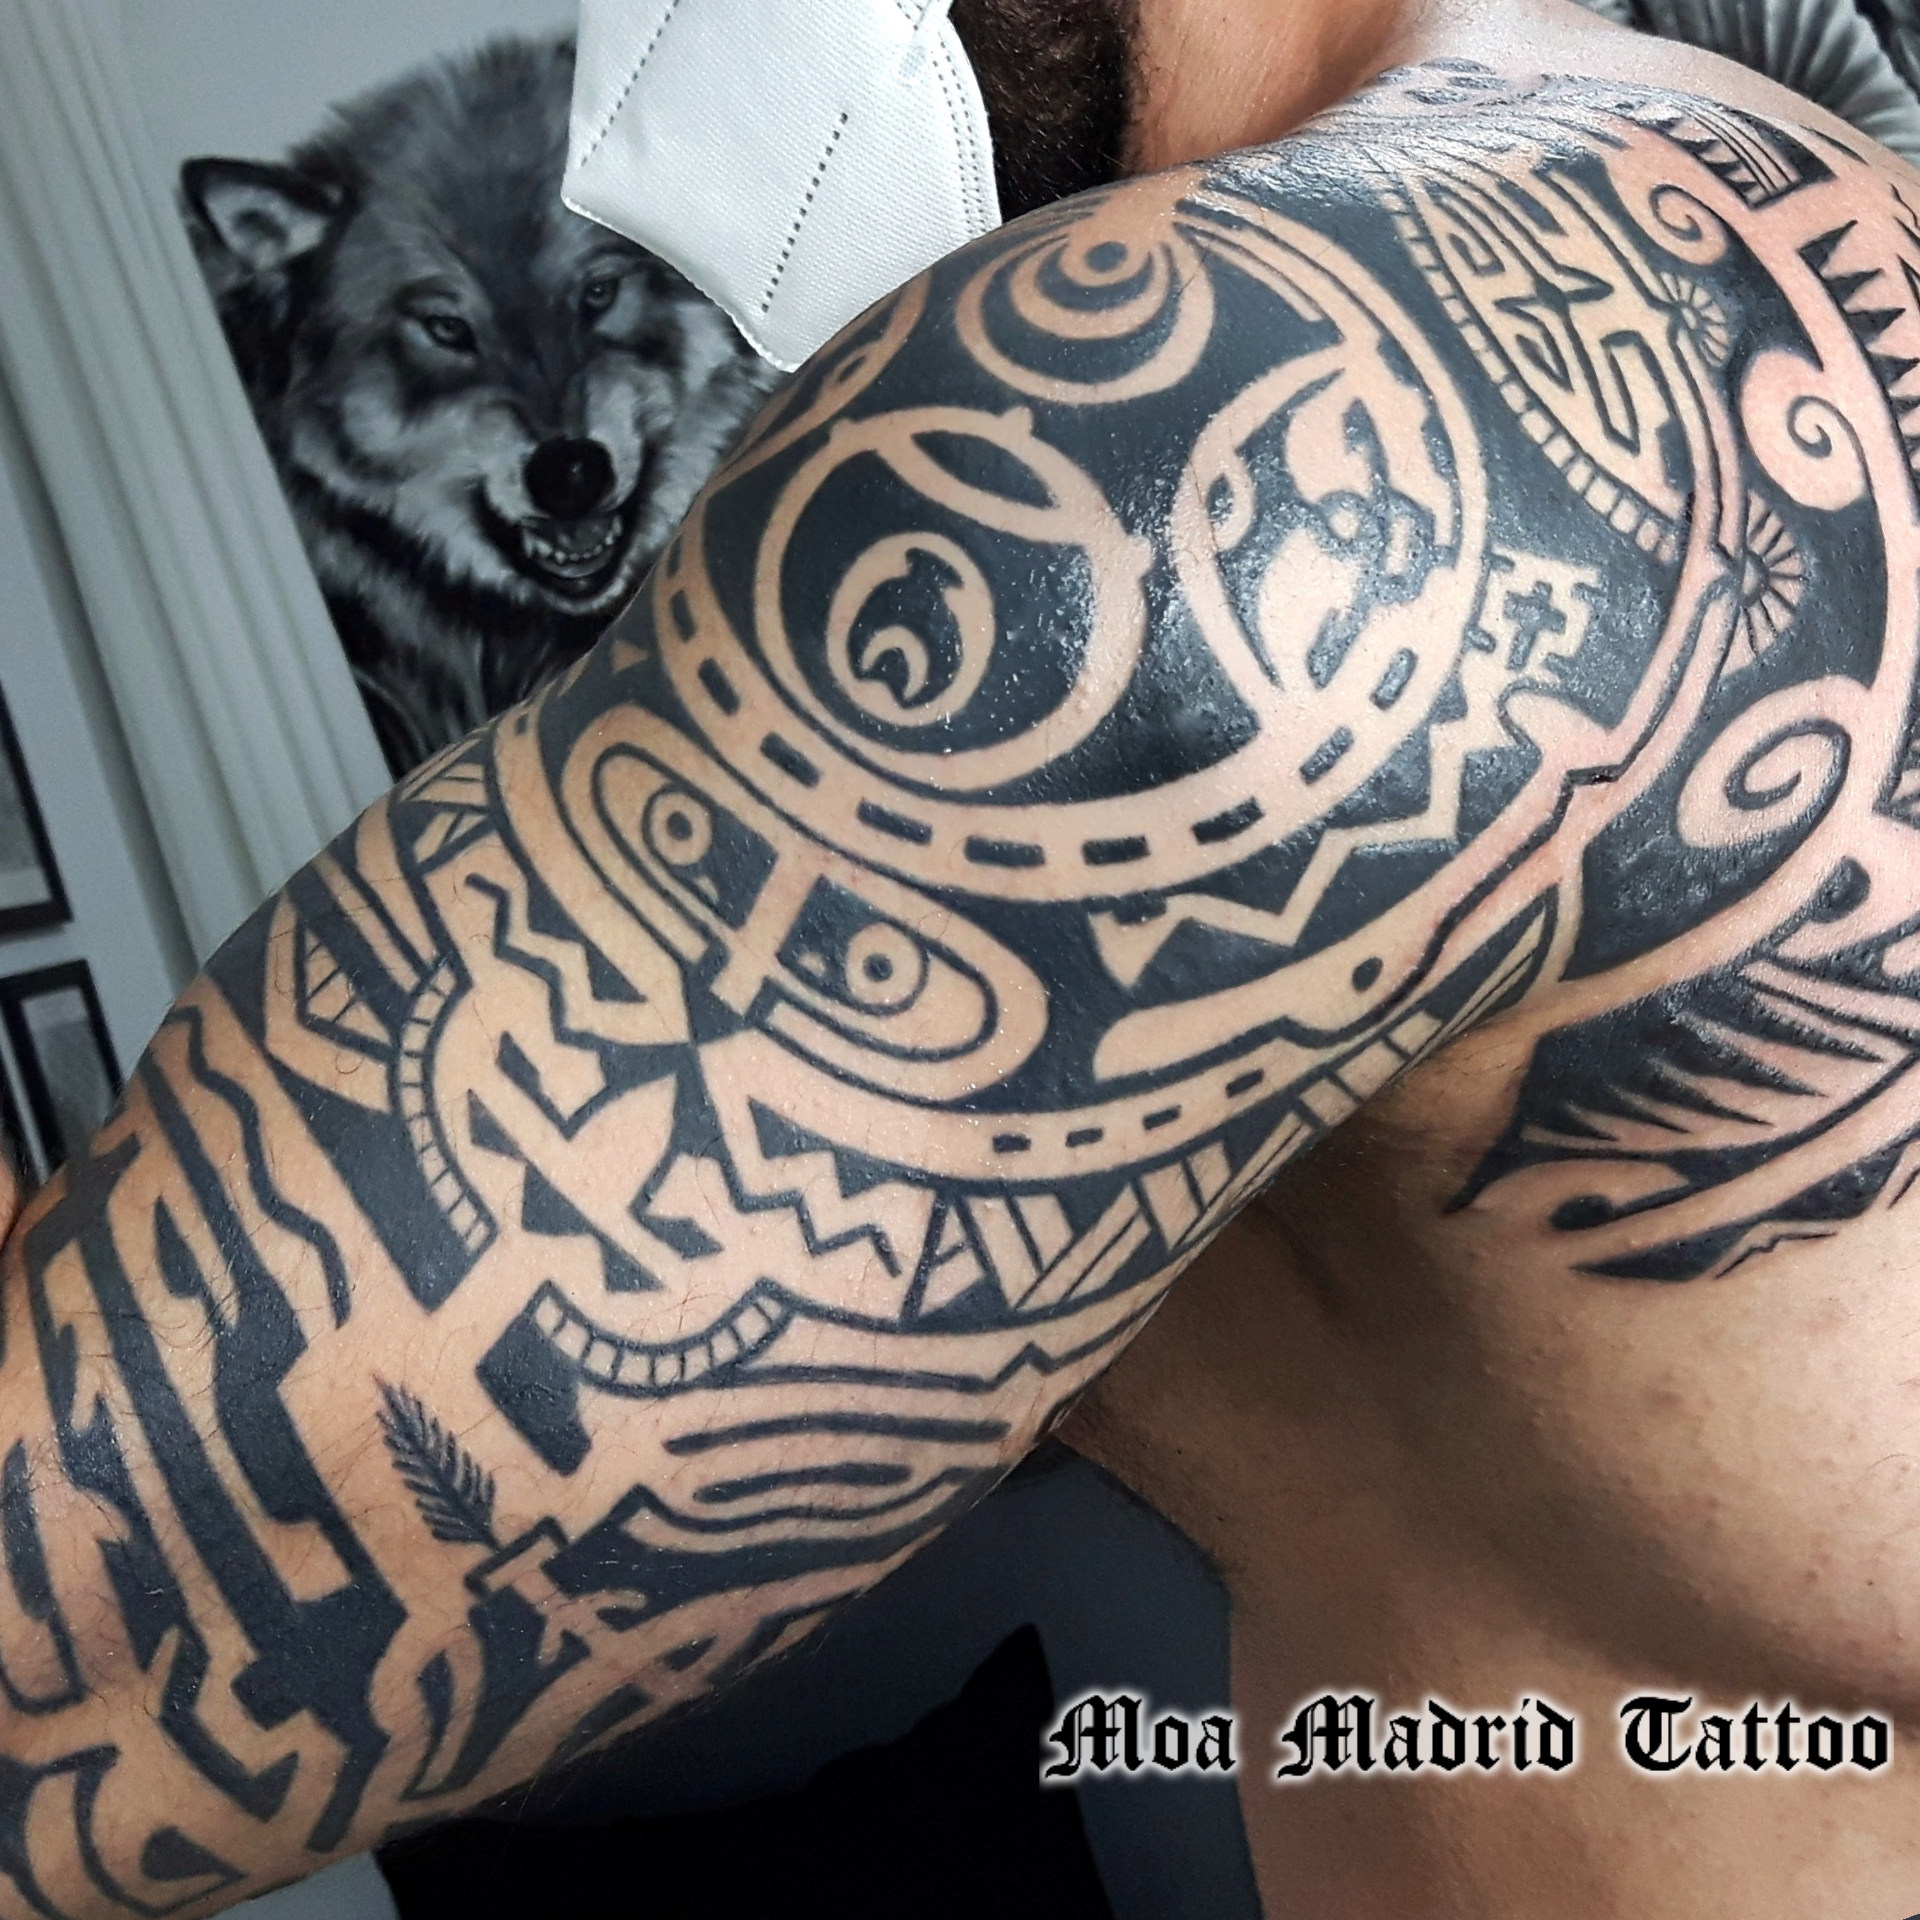 Un diseño exclusivo de tatuaje maorí inspirado en el del actor Dwayne Johnson hecho en Madrid